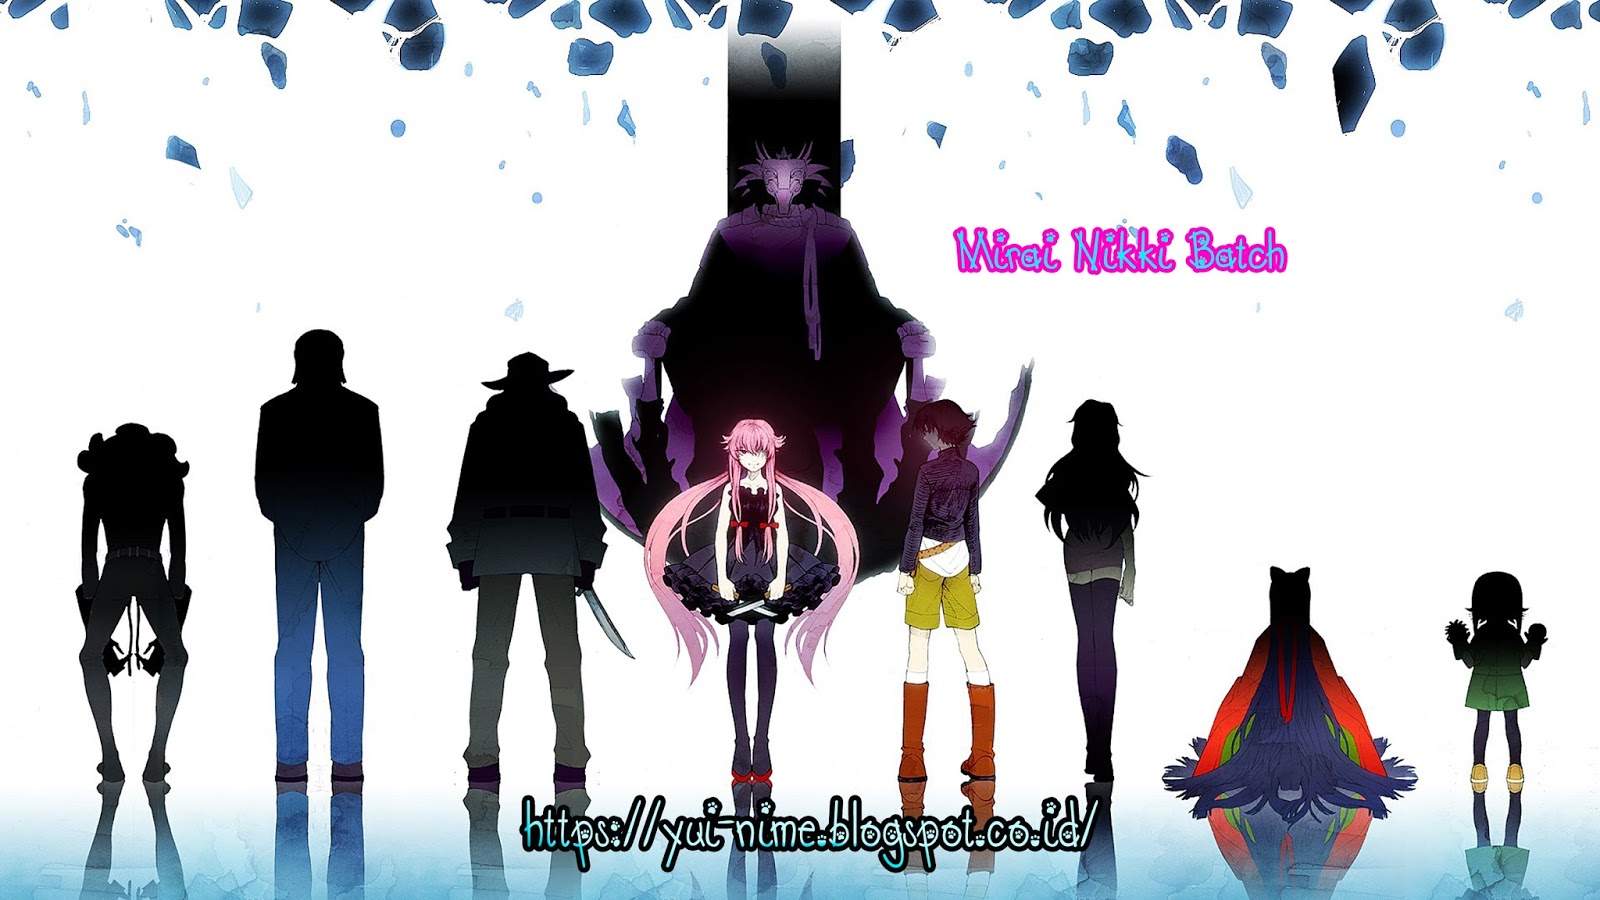 Download Wallpaper Anime Mirai Nikki Batch HD Yui Nime